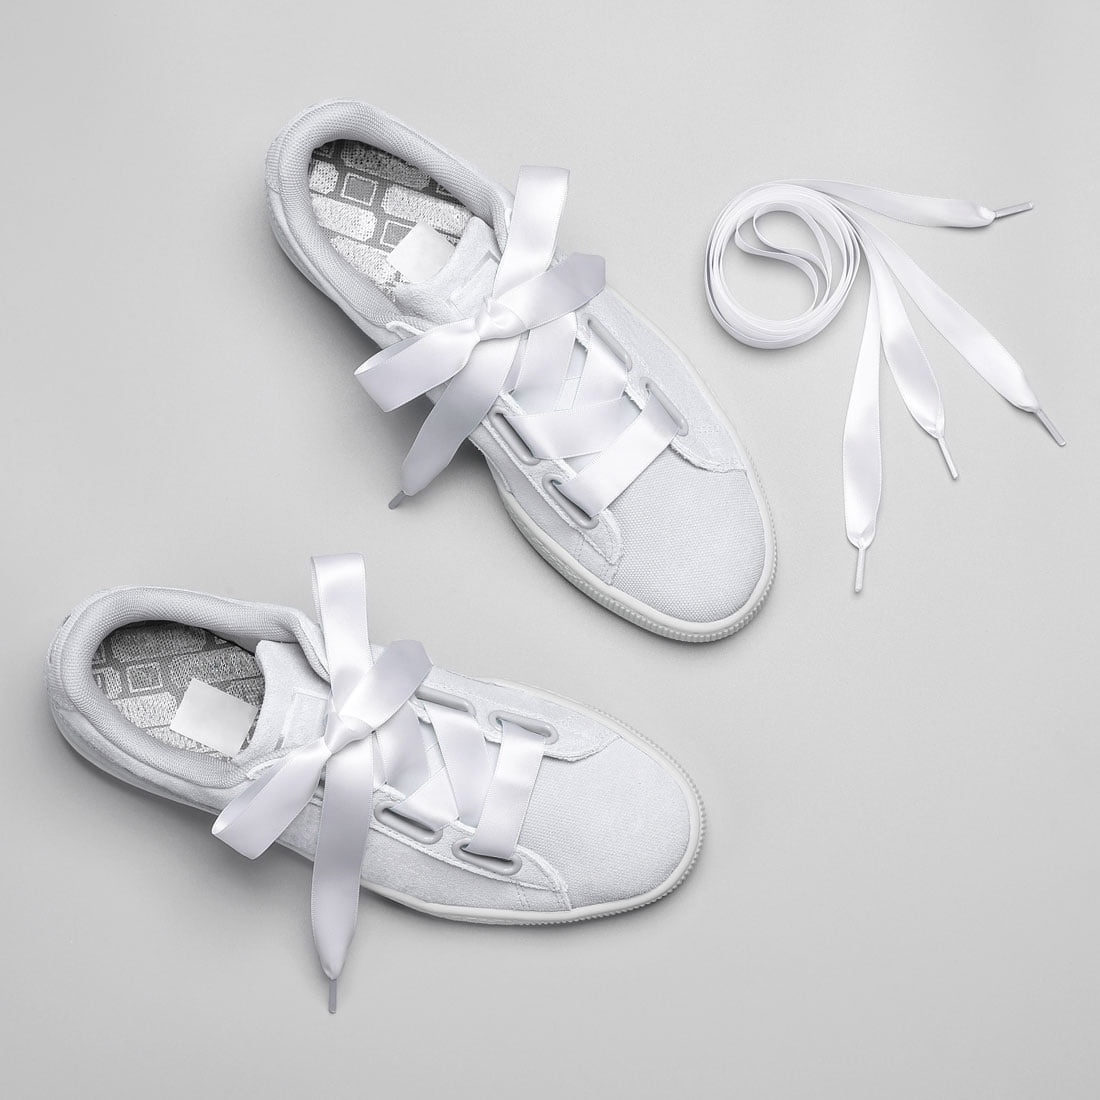 white satin shoelaces